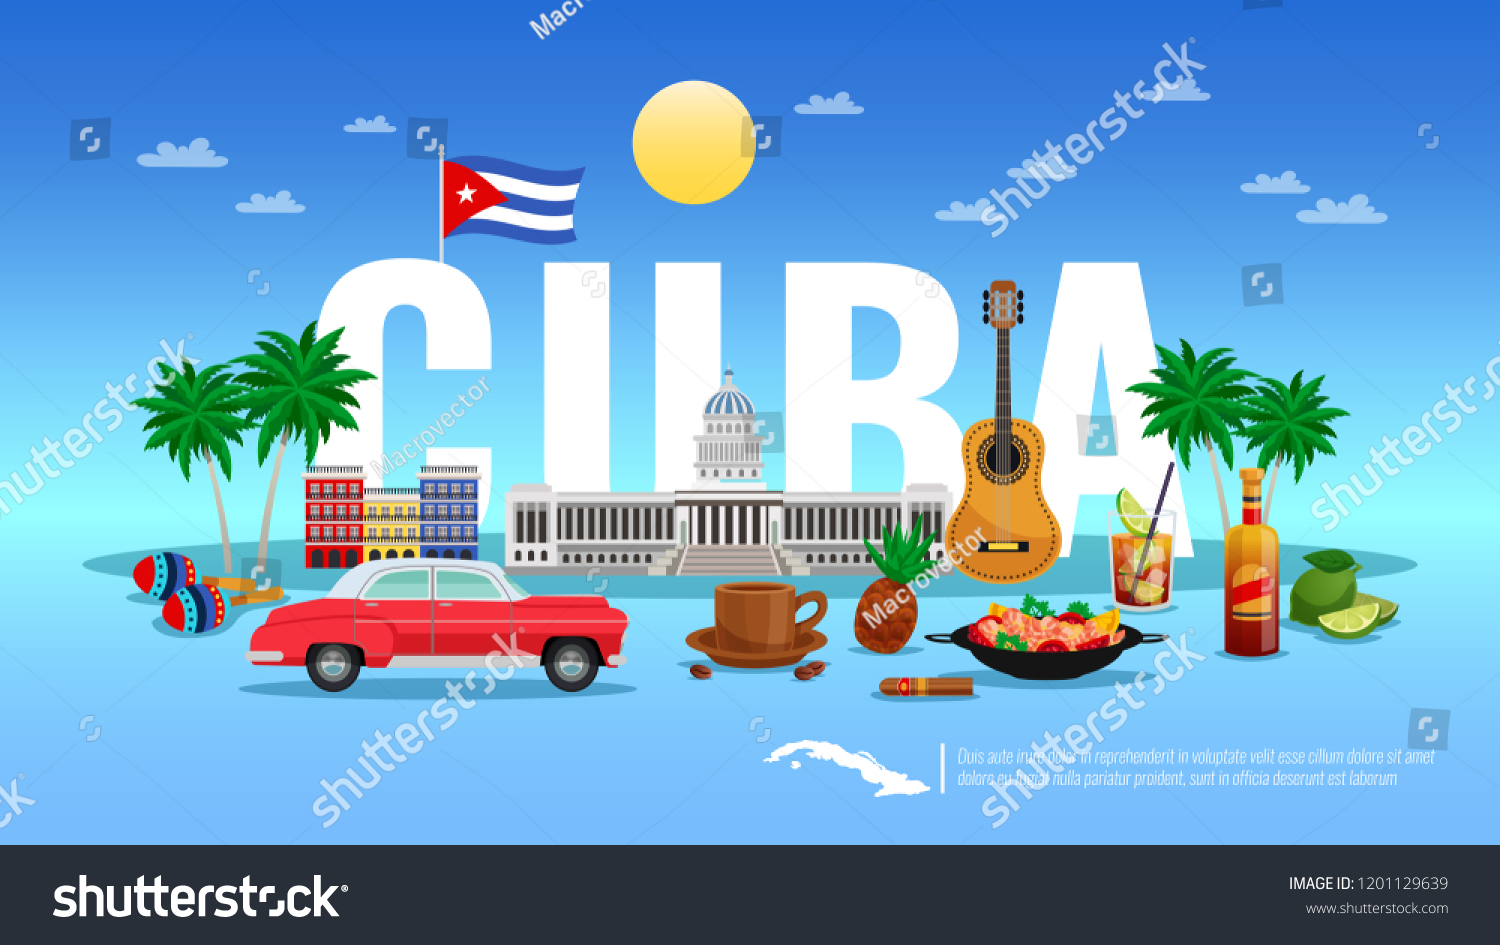 Cuba wallpaper stock vectors images vector art